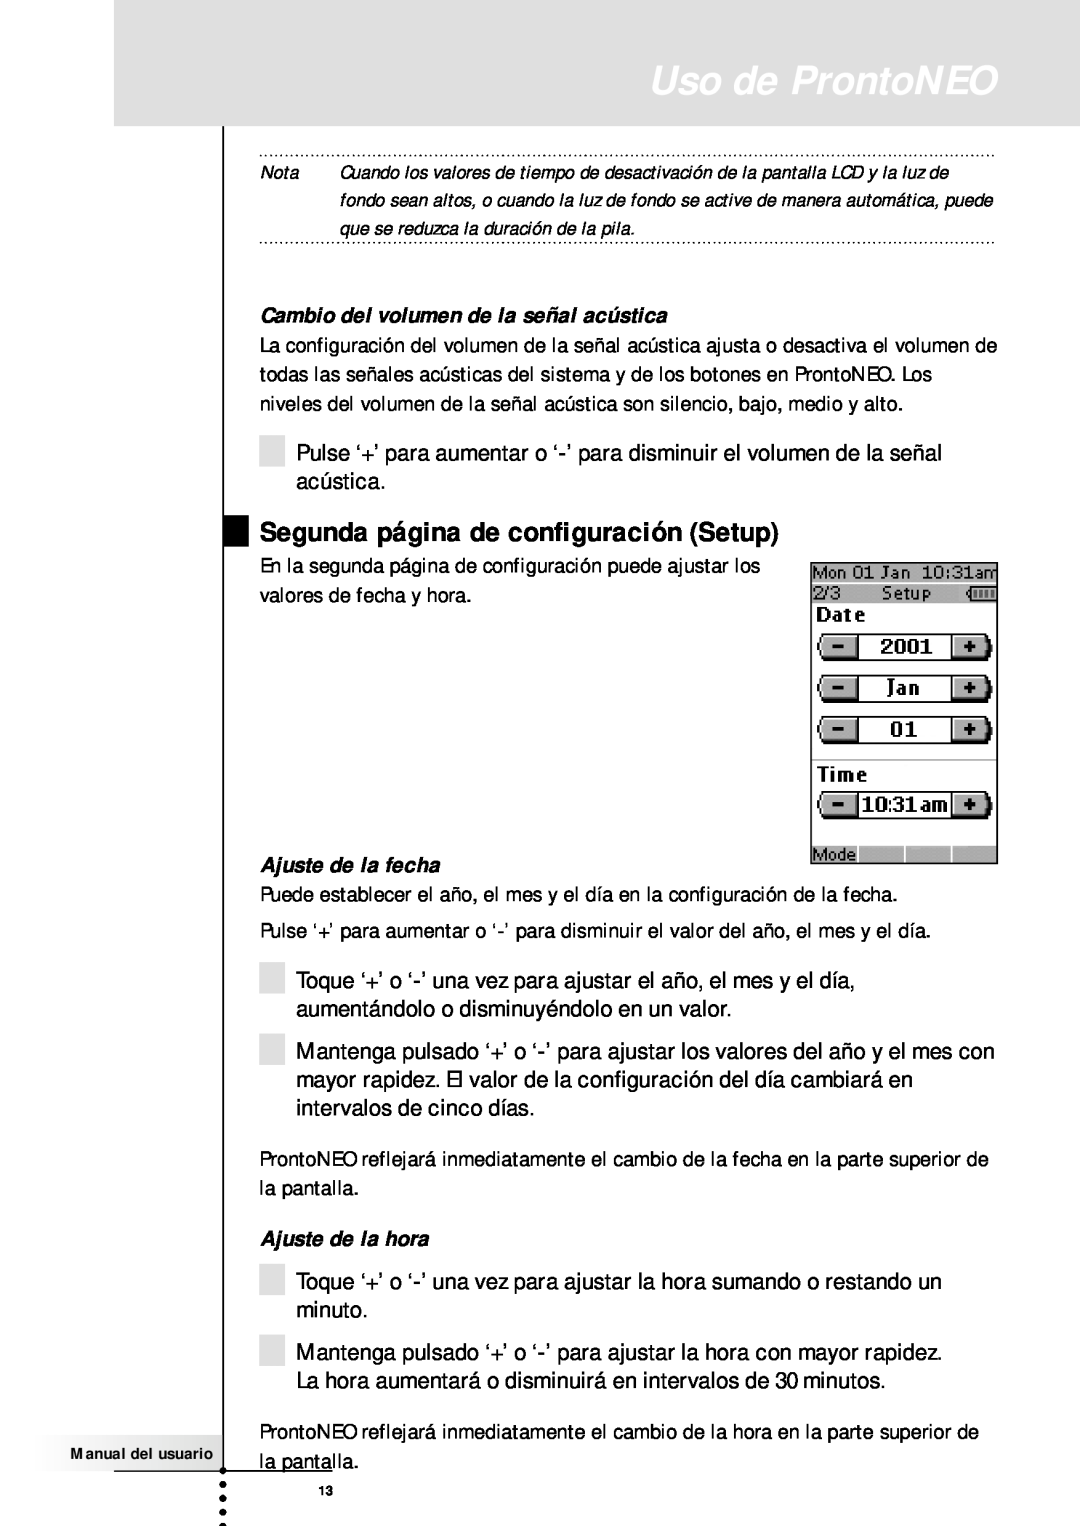 Philips SBC RU930 manual Uso de ProntoNEO, Segunda página de configuración Setup, Cambio del volumen de la señal acústica 